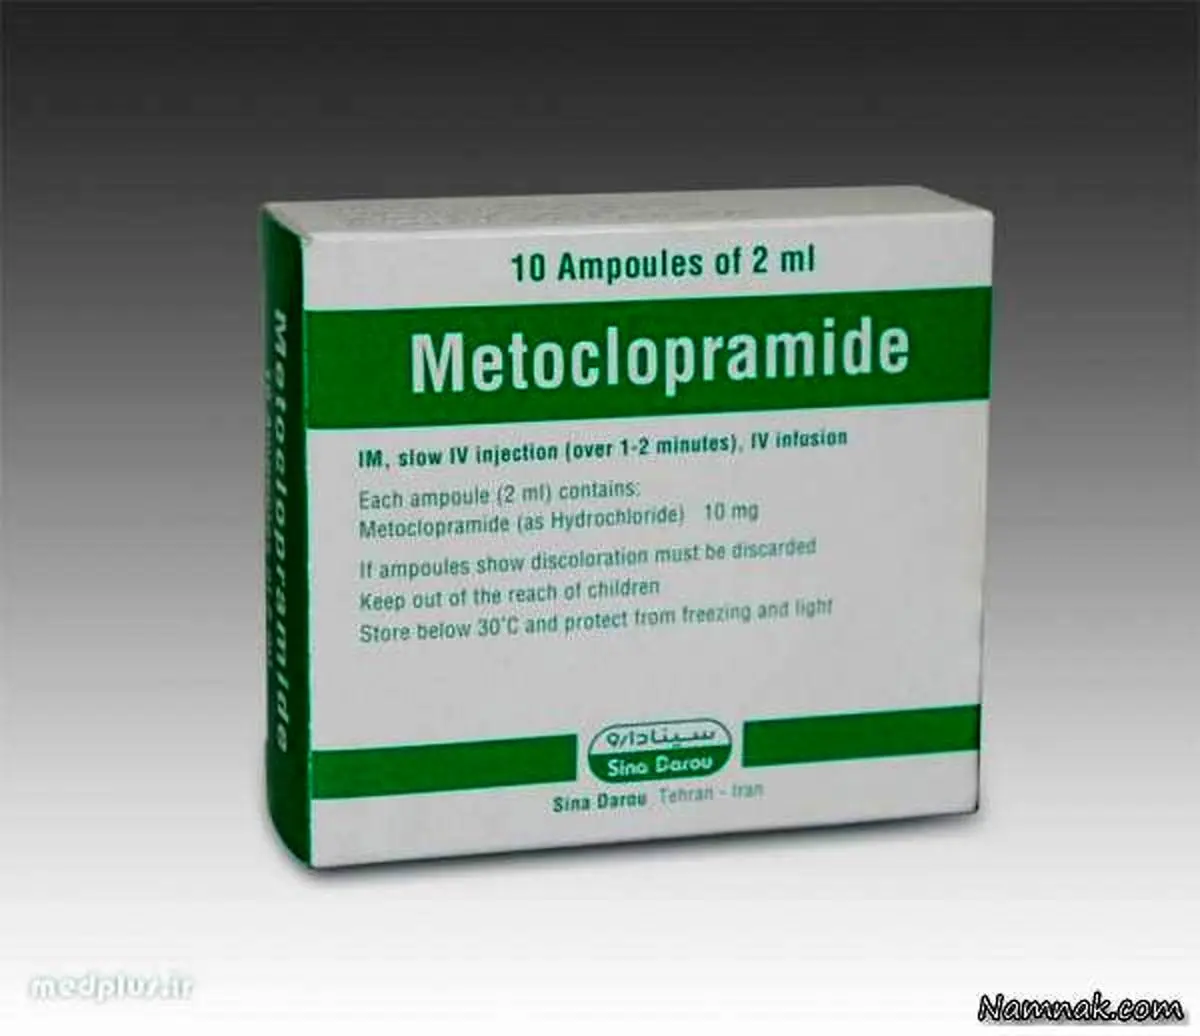 داروی متوکلوپرامید چیست + کاربرد و عوارض